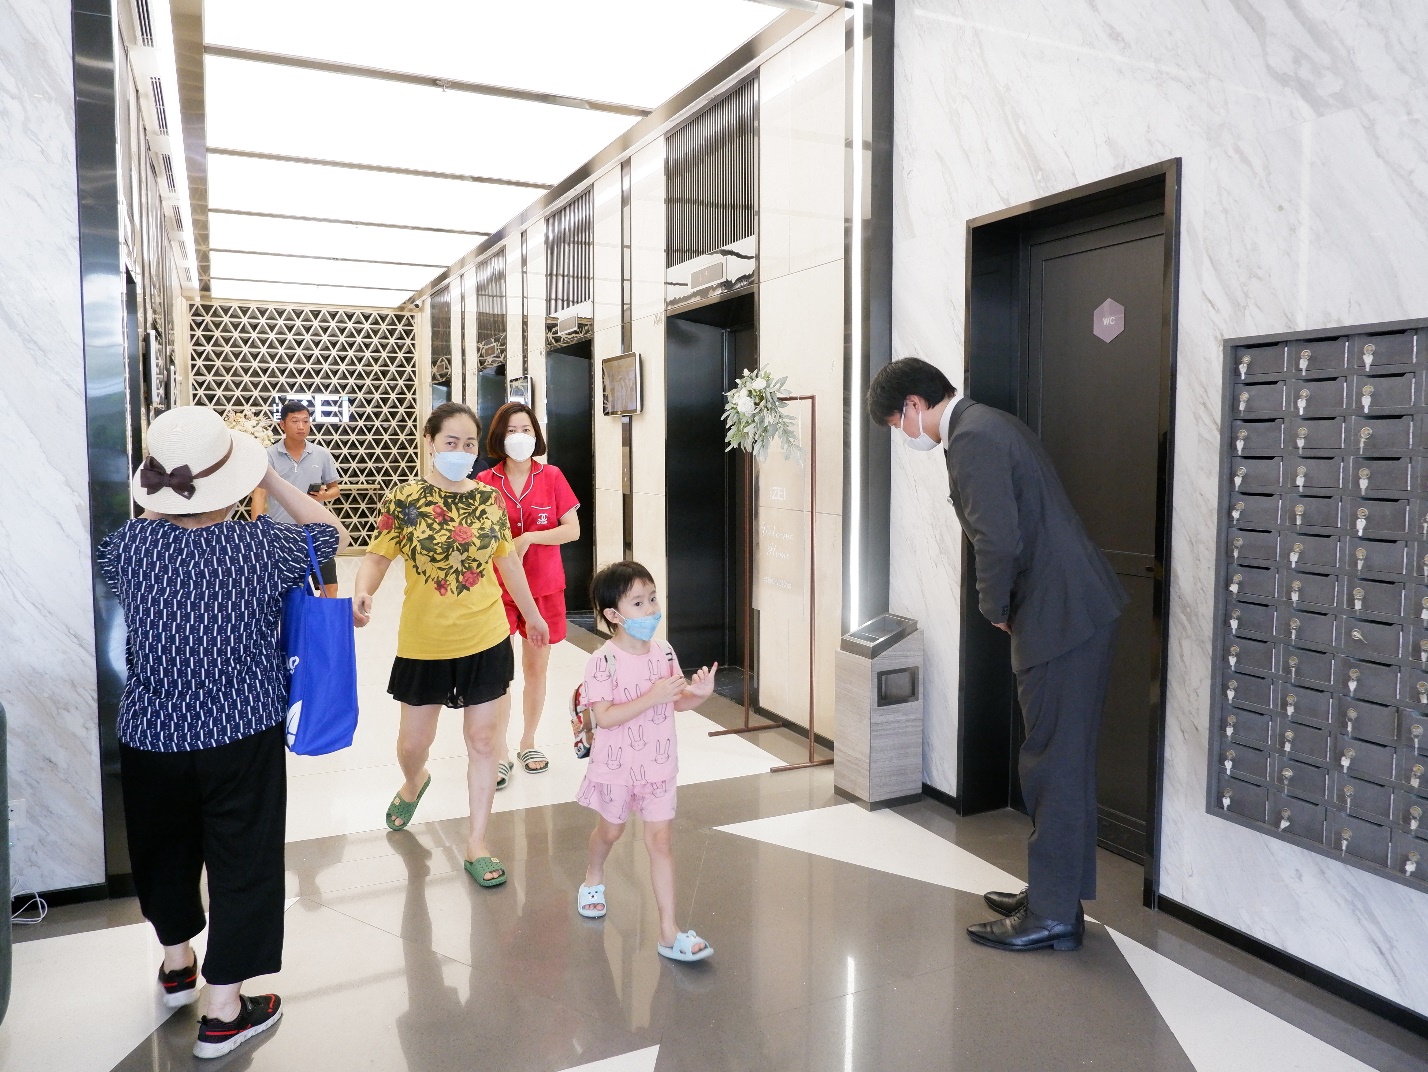 BLQ tòa nhà Nhật Bản cúi chào cư dân tại sảnh chung cư - Ảnh 1.